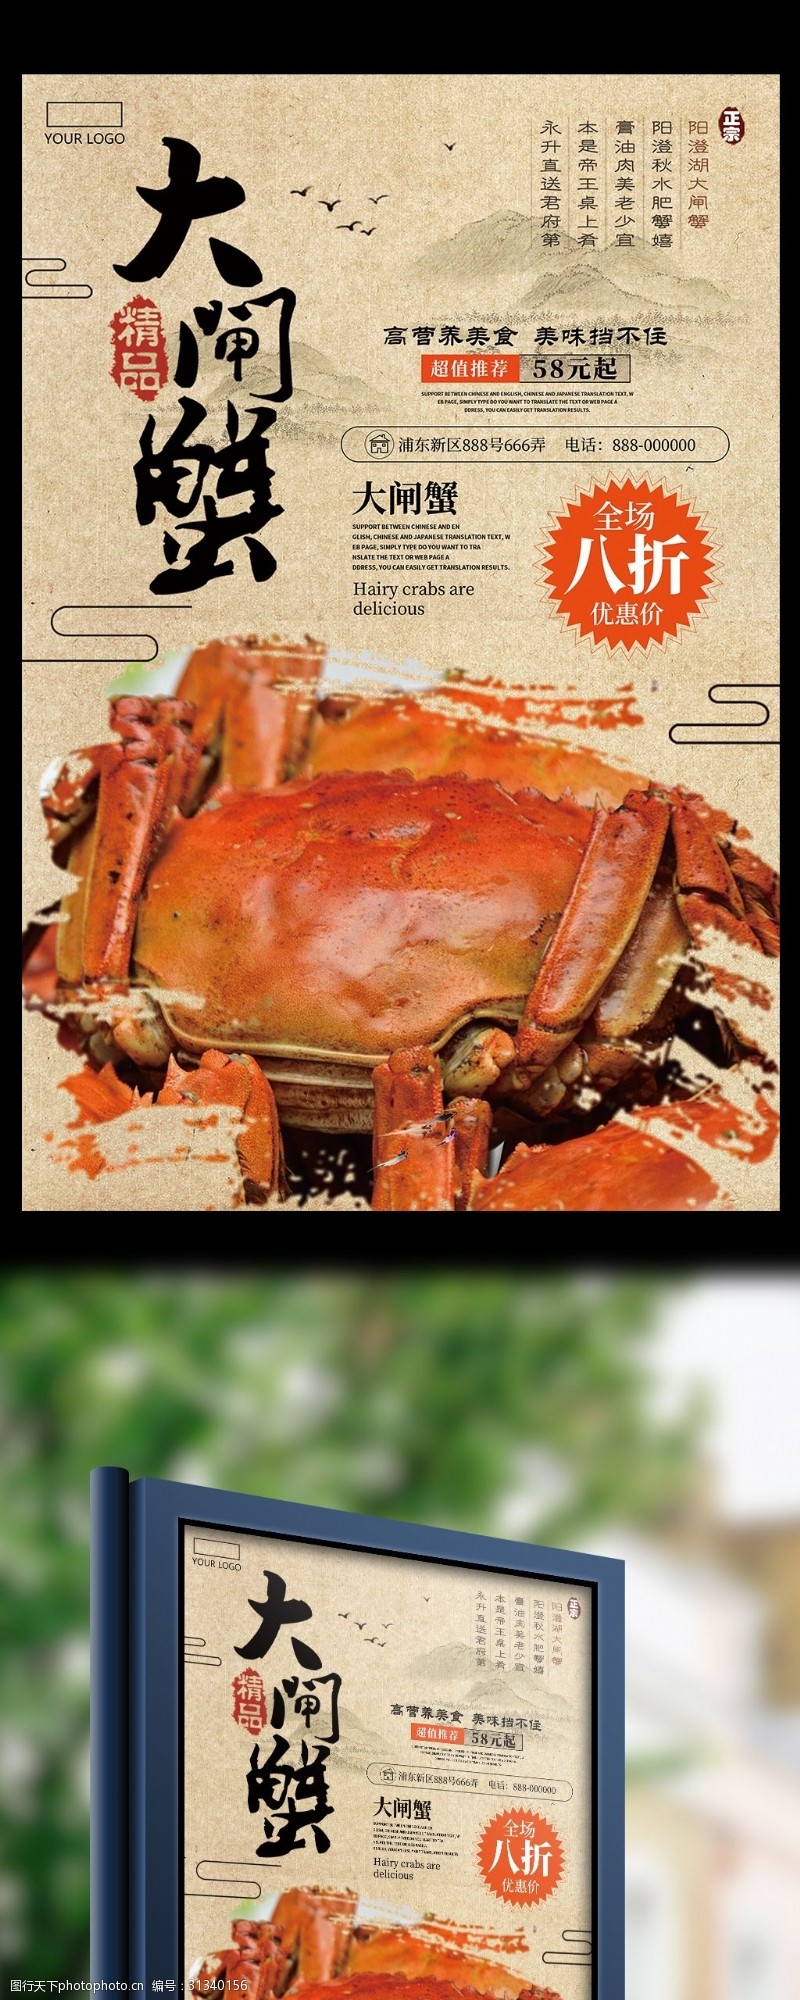 螃蟹宣传美食大闸蟹海报宣传展板设计